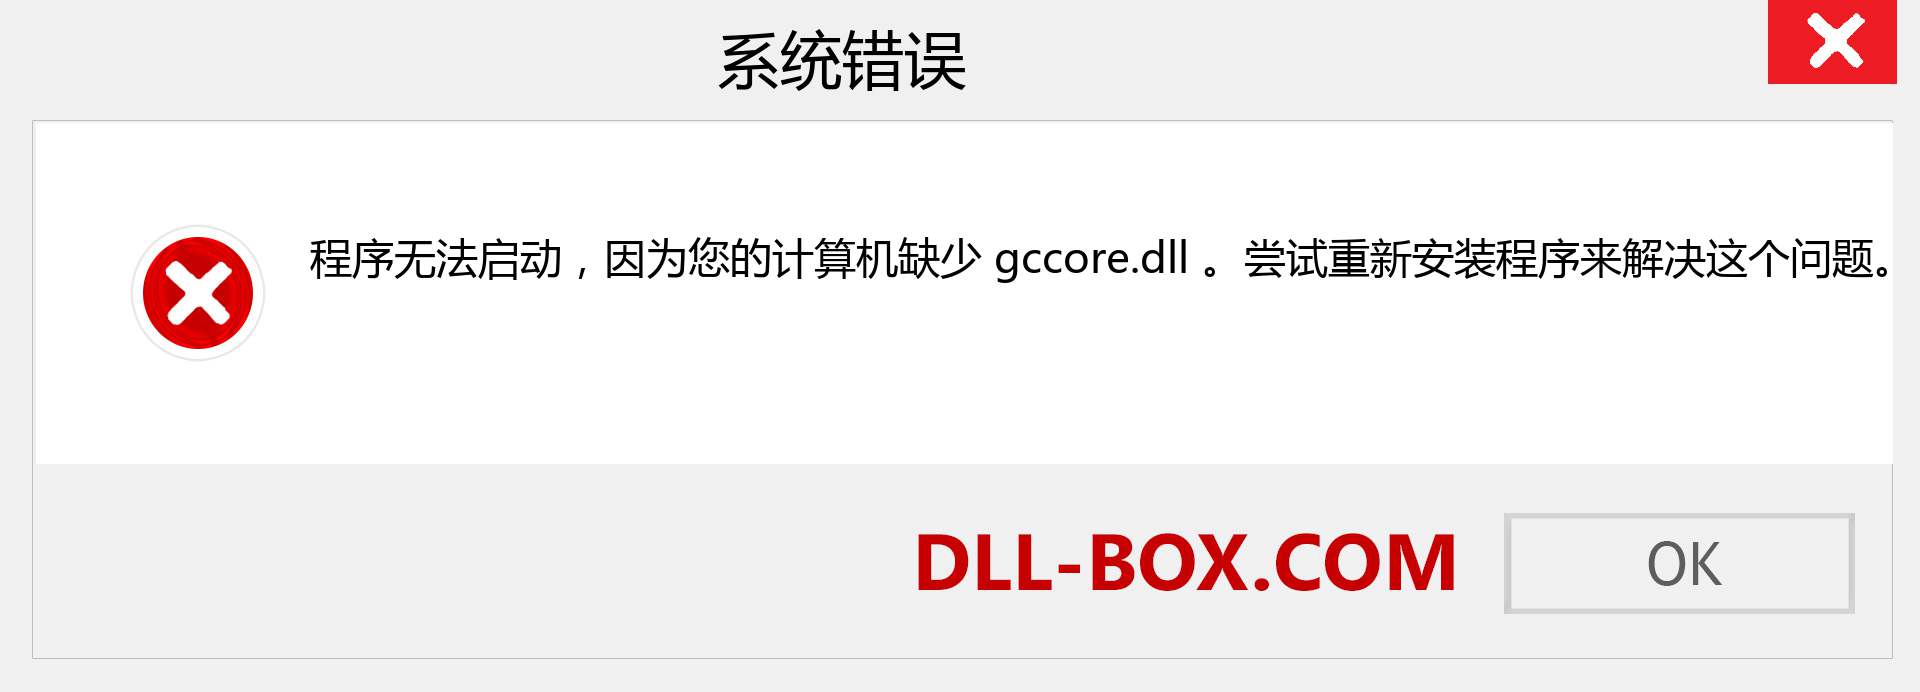 gccore.dll 文件丢失？。 适用于 Windows 7、8、10 的下载 - 修复 Windows、照片、图像上的 gccore dll 丢失错误